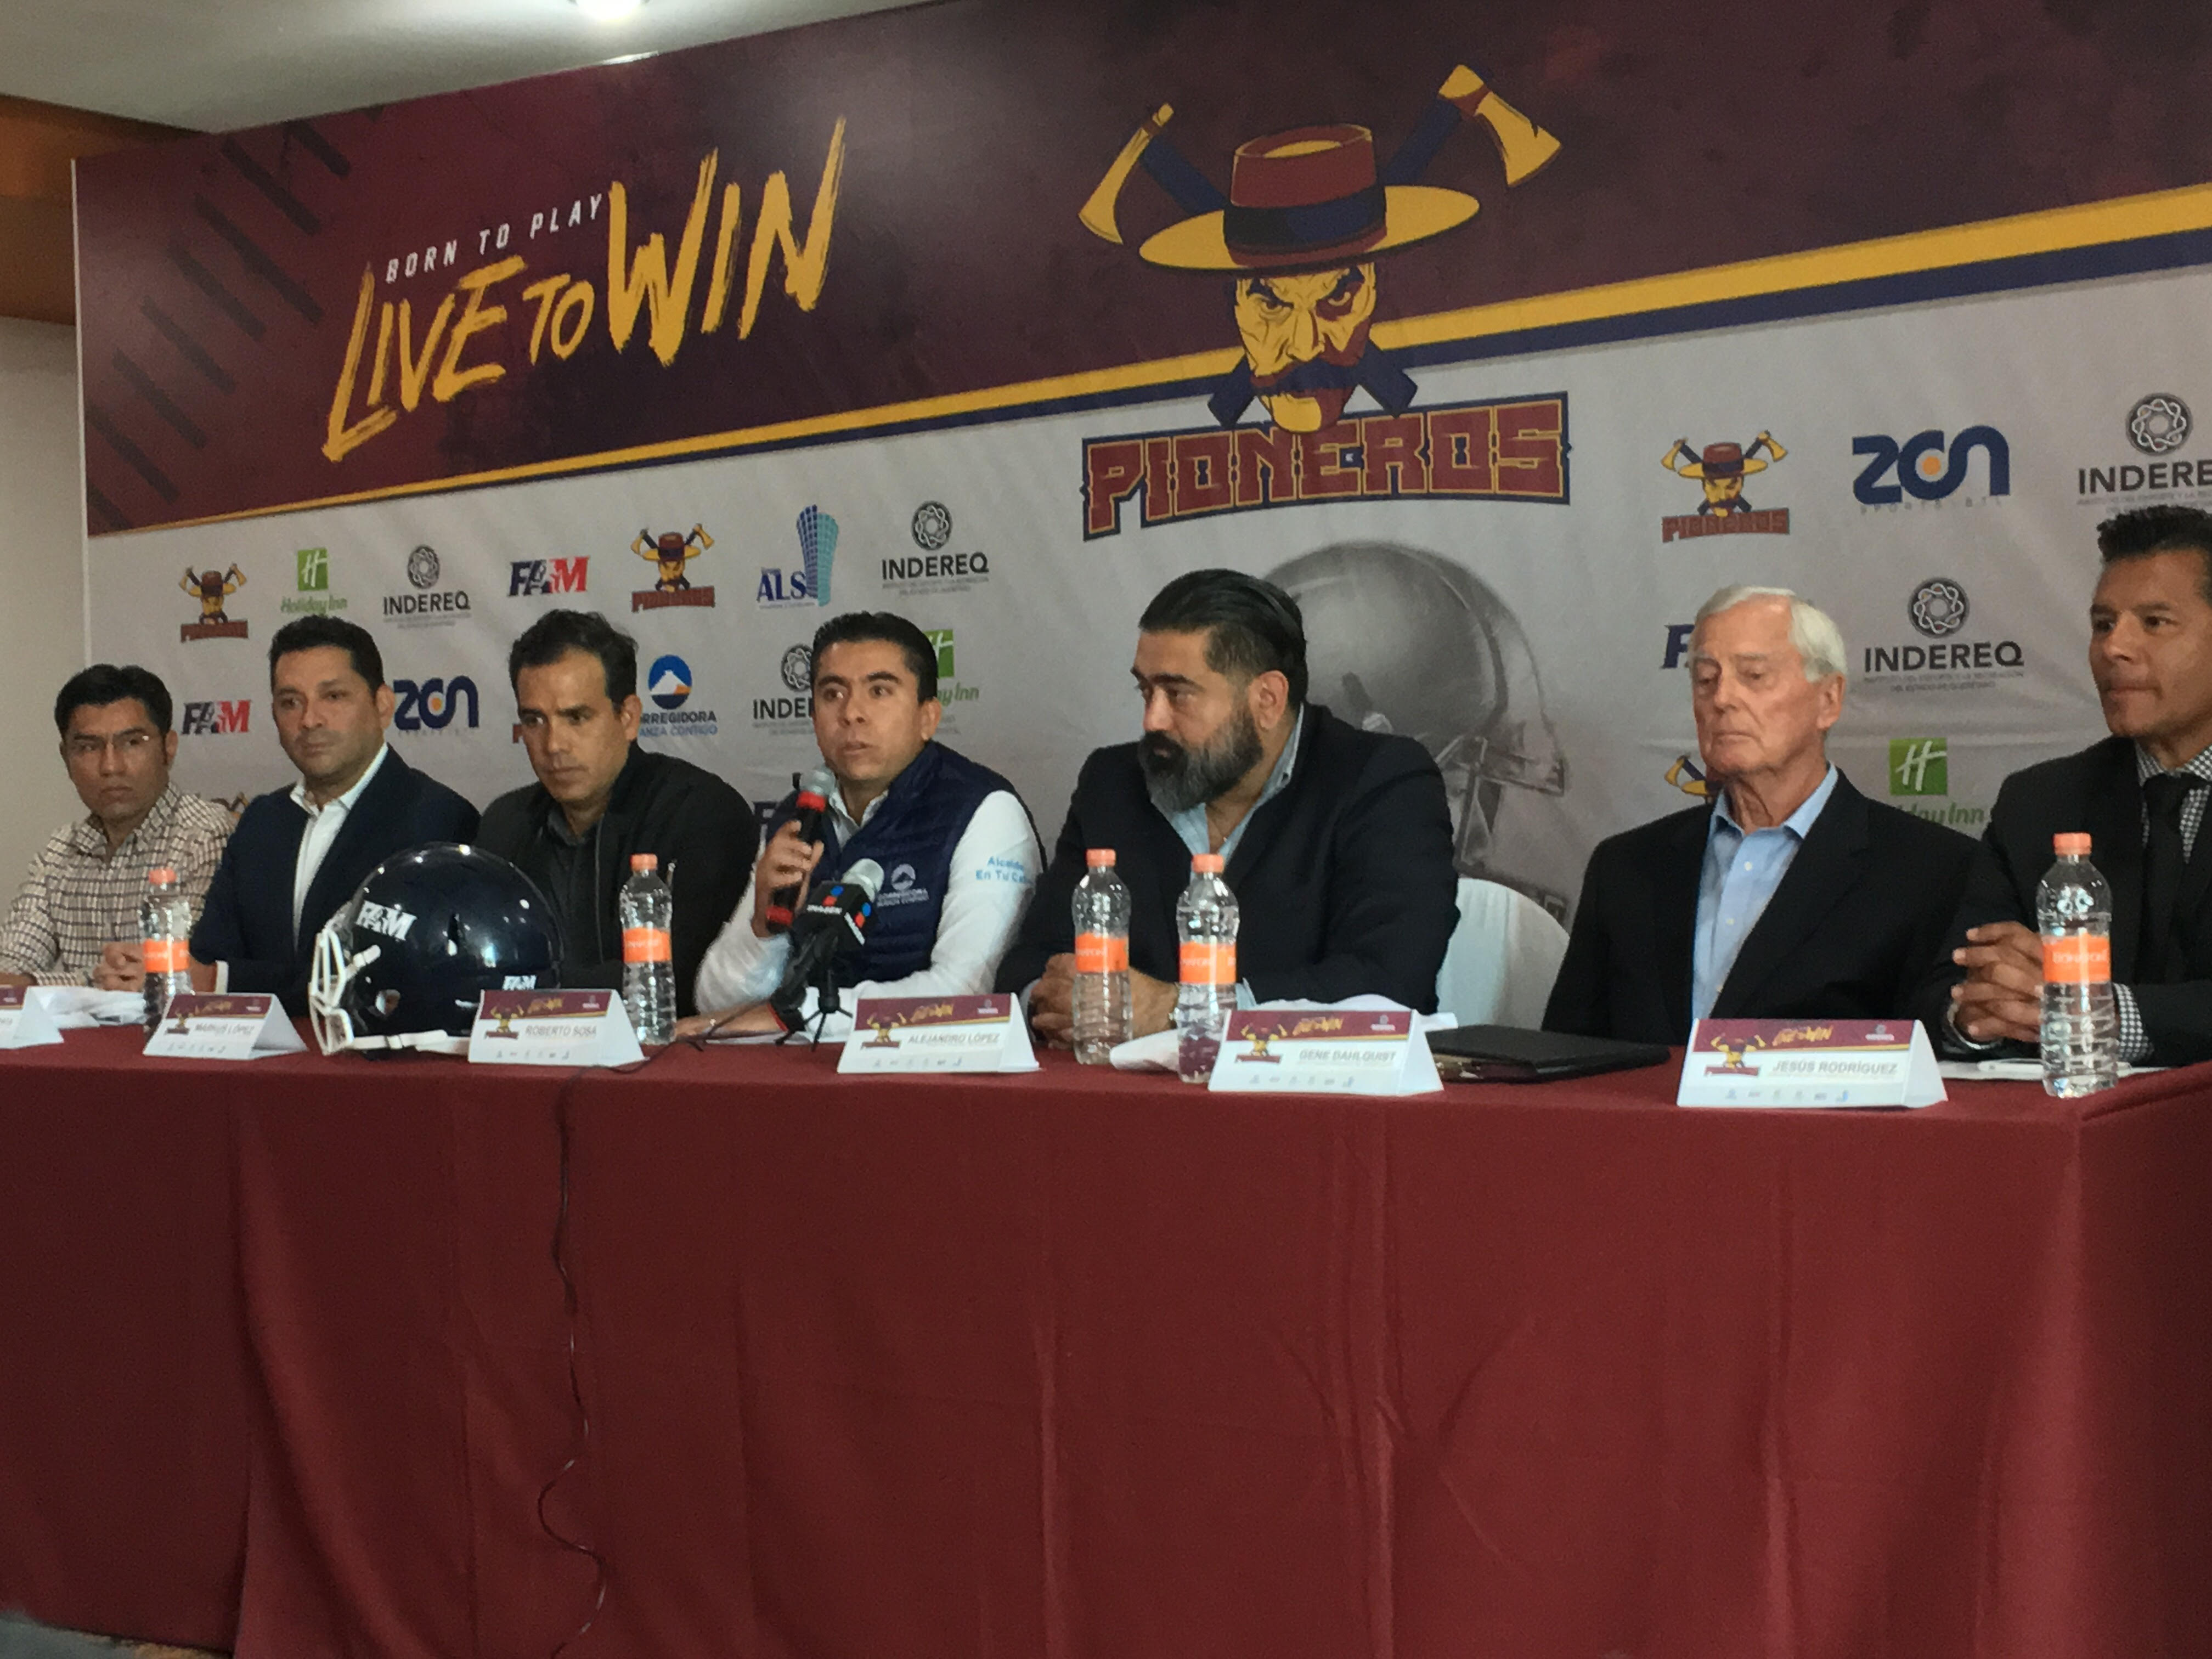  Con equipo “Pioneros”, Querétaro incursiona en football americano